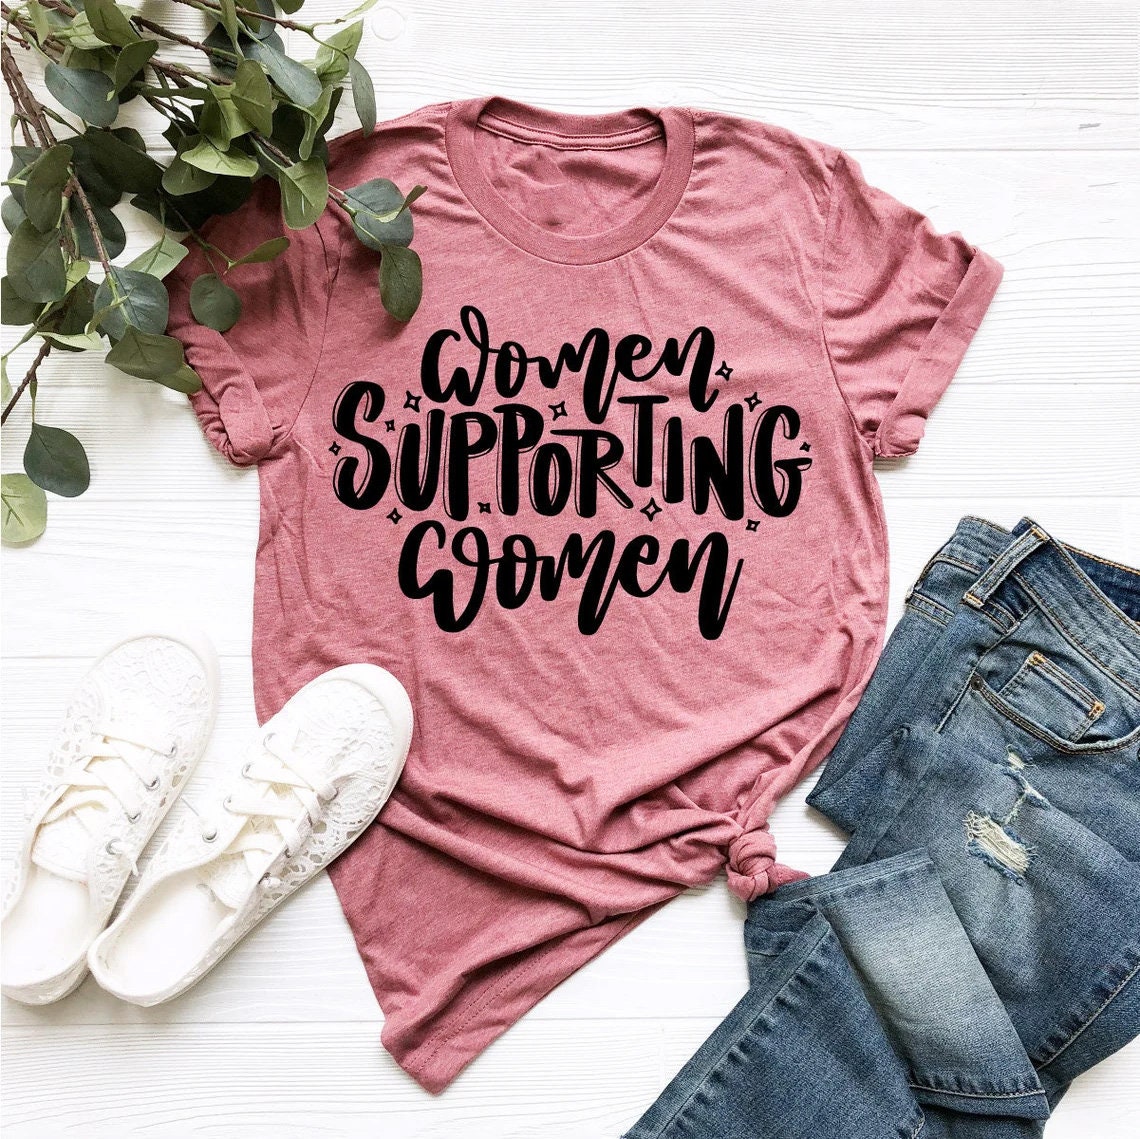 Discover Women Supporting Women Shirt, Woman Up Shirt, Feminist Shirt, Empower Women Shirt, Woman Power Shirt, Women's Day Shirt, Gift For Her